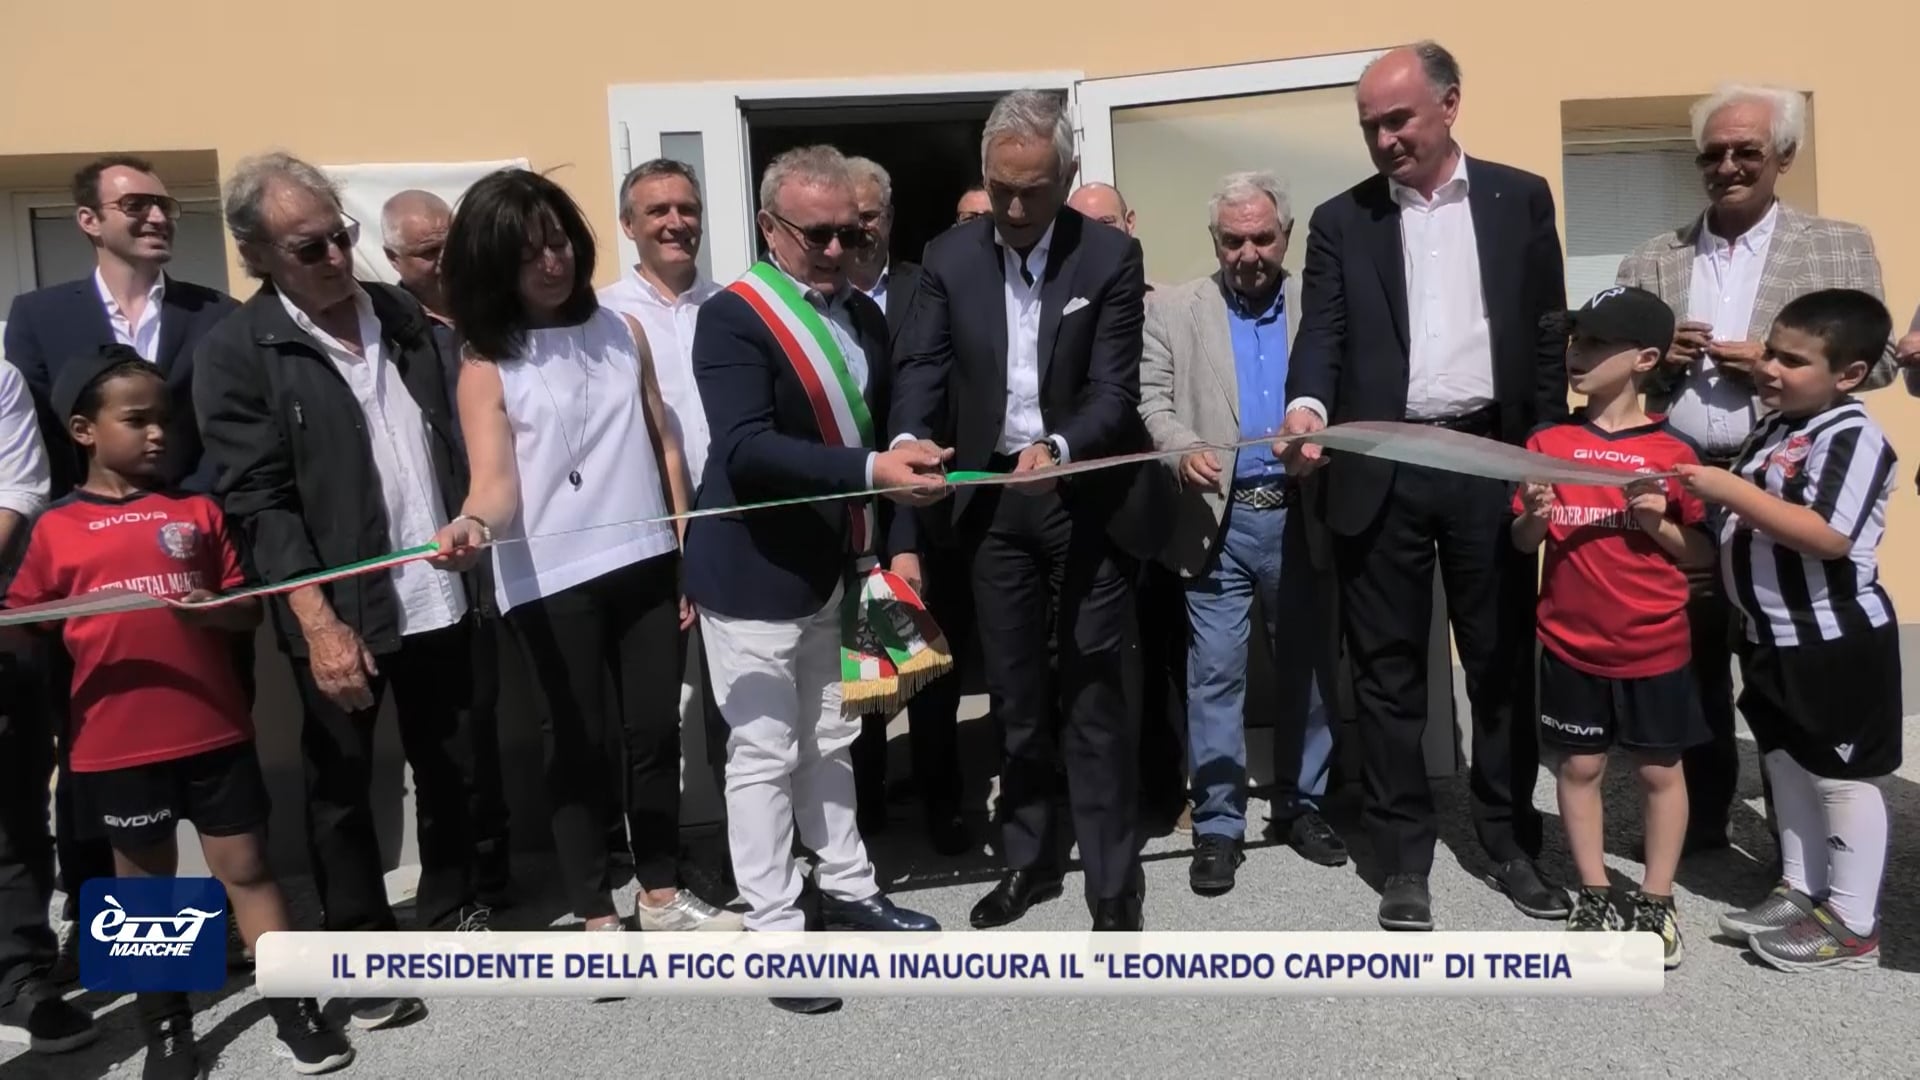 Il presidente della Figc Gravina inaugura il “Leonardo Capponi” di Treia - VIDEO